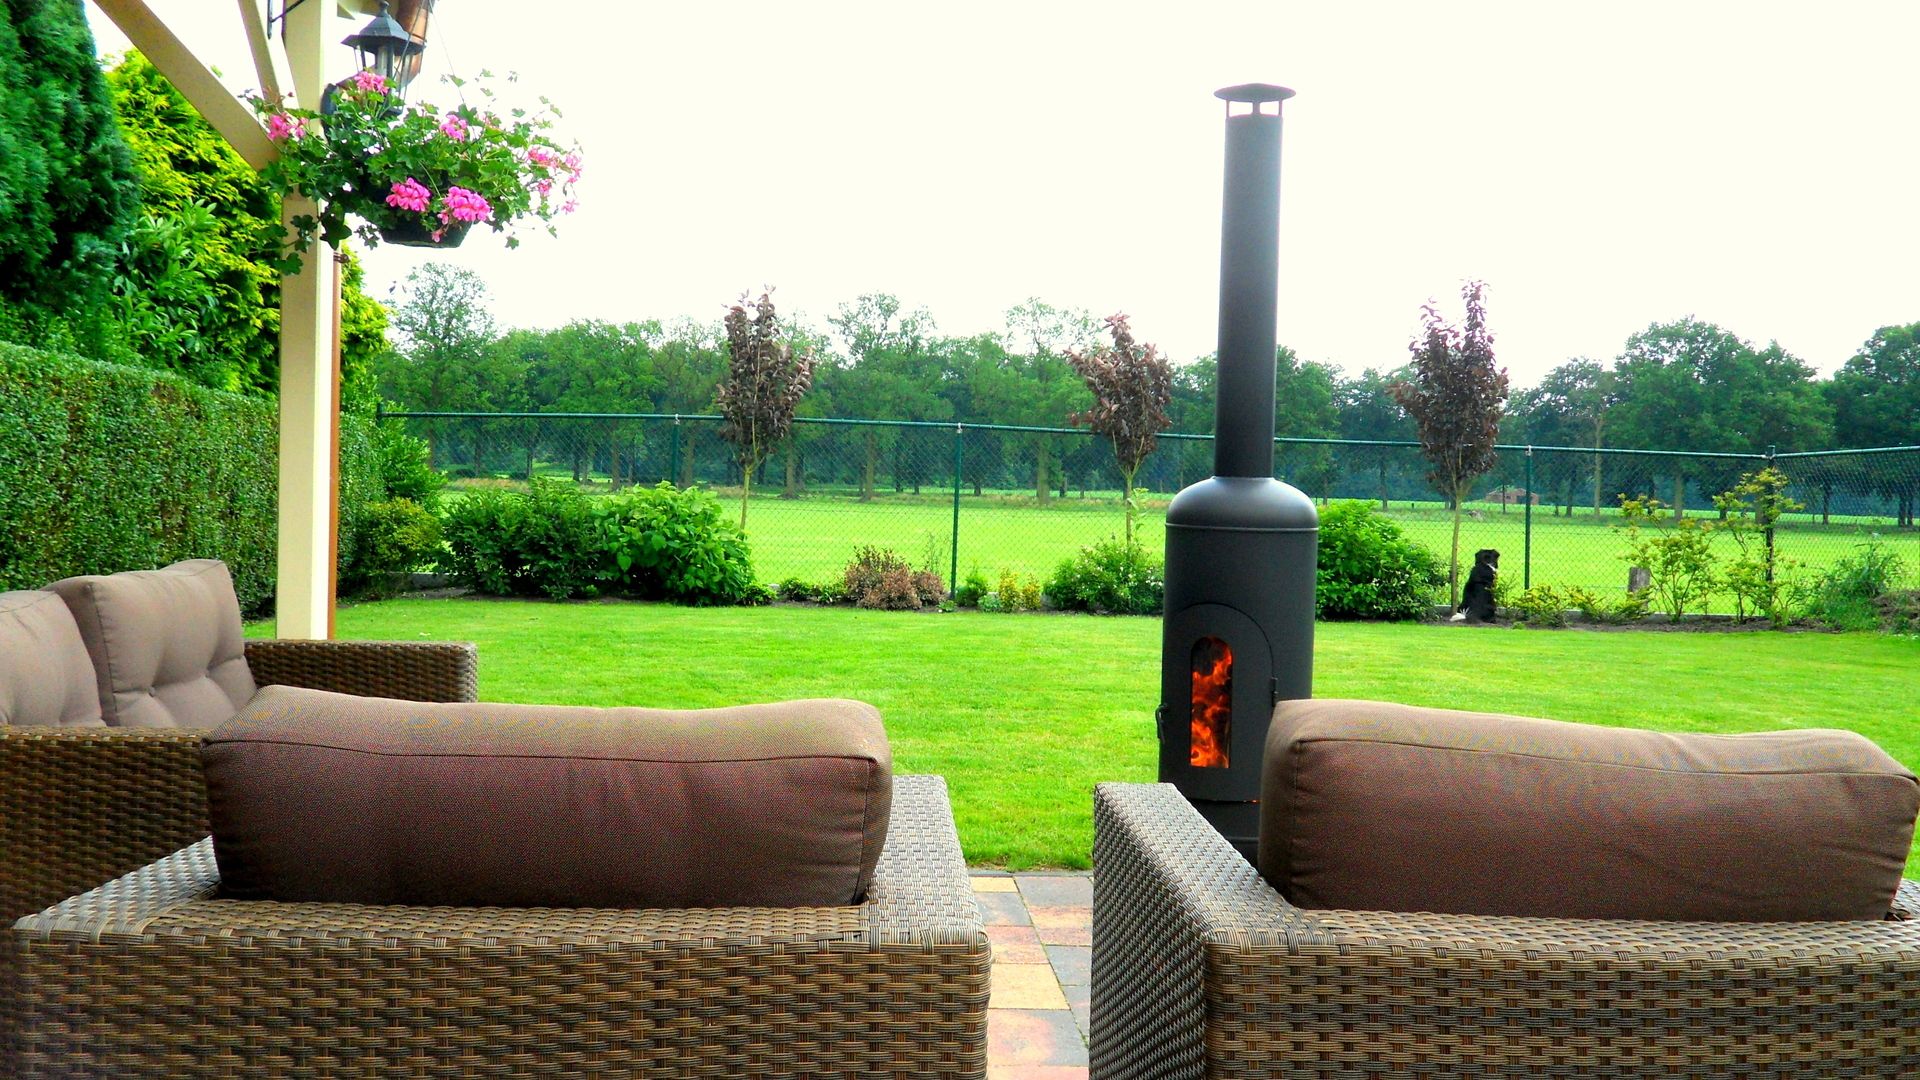 Tuinhaard, K&G Buitenleven K&G Buitenleven Industrial style garden Fire pits & barbecues